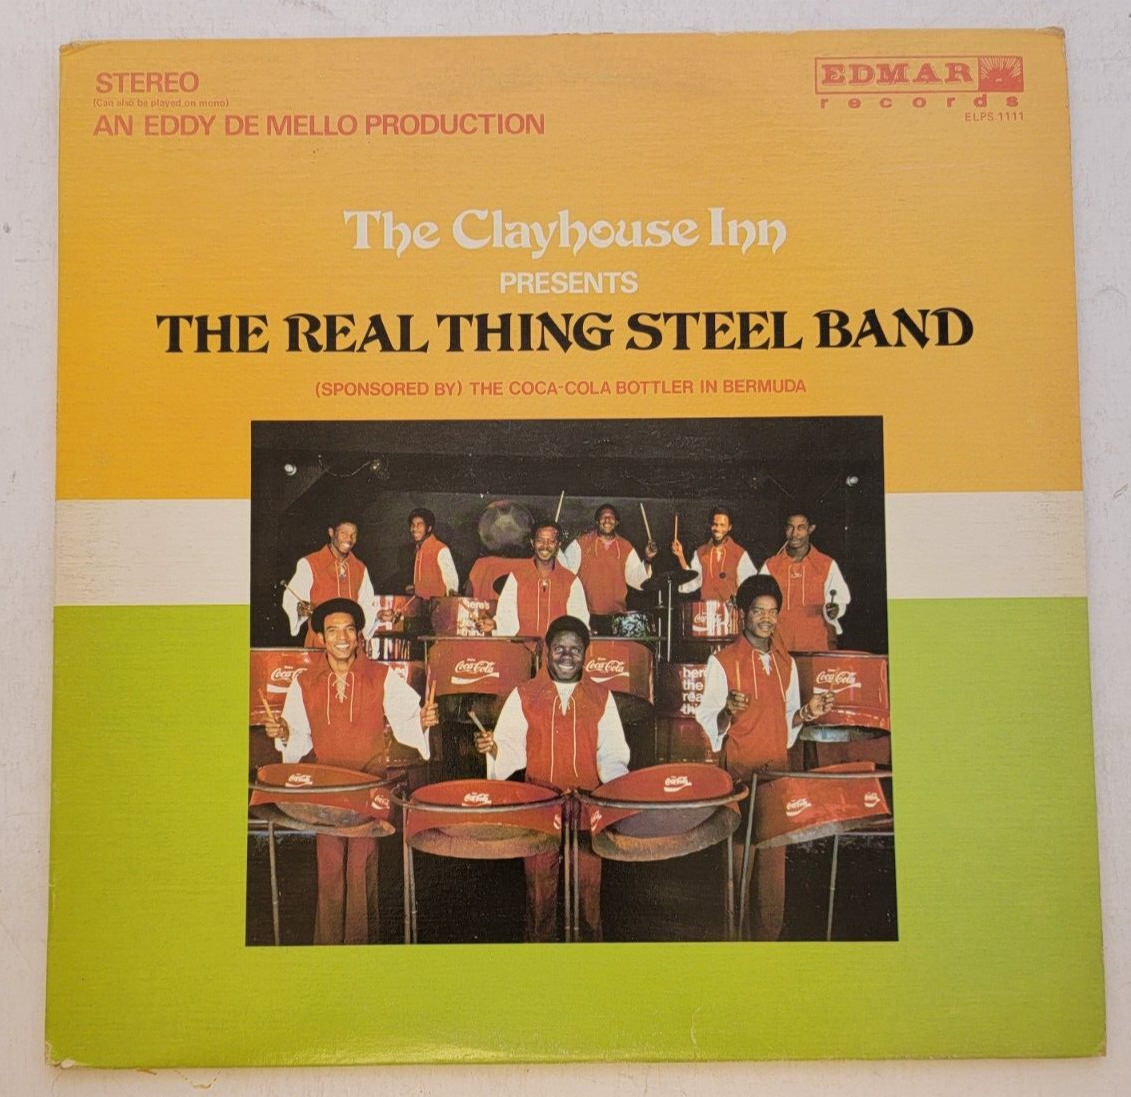 The Real Thing Steel Band "Clayhouse Inn Bermuda Edmar ELPS-1111 LP Album vinyl